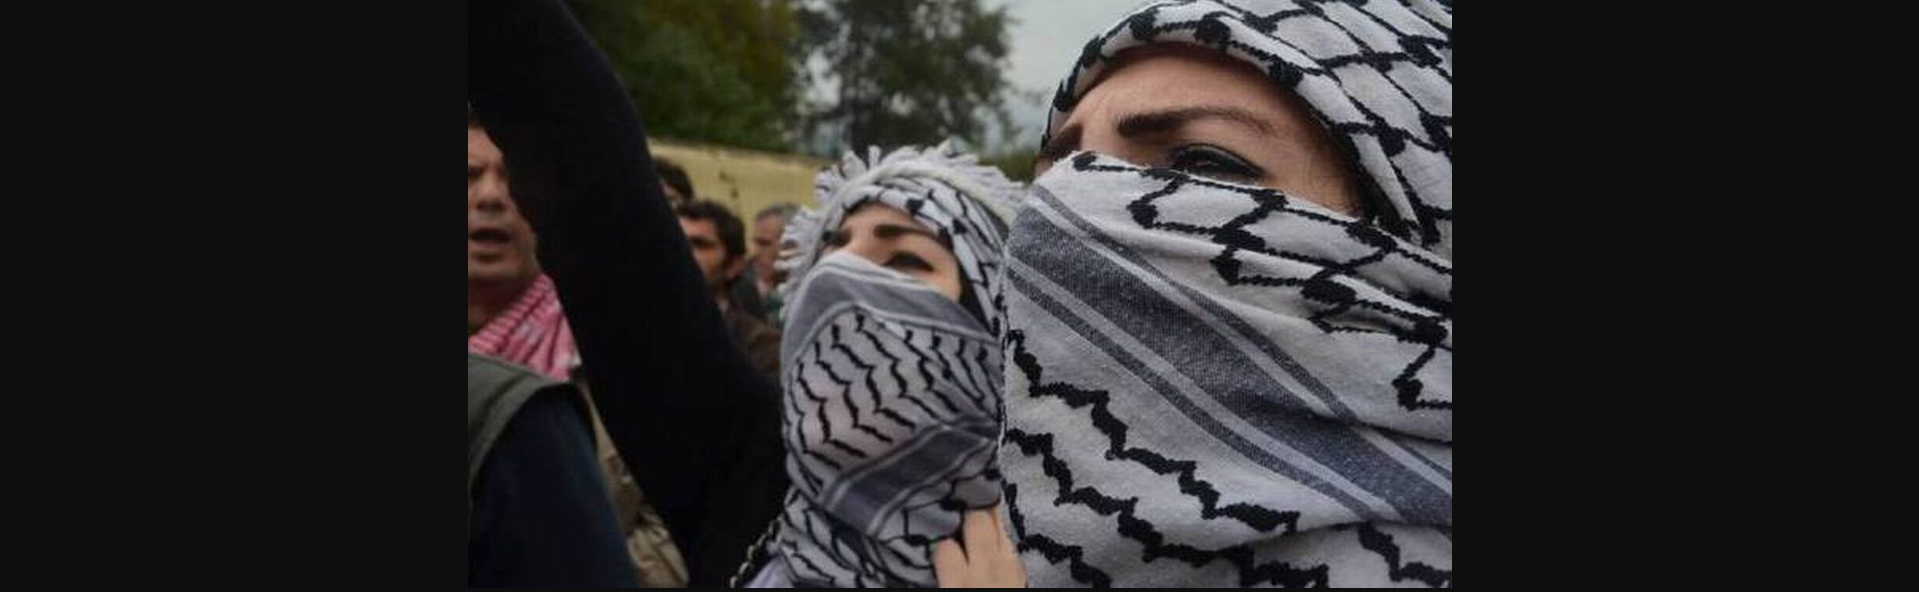 Βερολίνο: Απαγορεύεται η χρήση του παραδοσιακού παλαιστινιακού μαντιλιού στα σχολεία